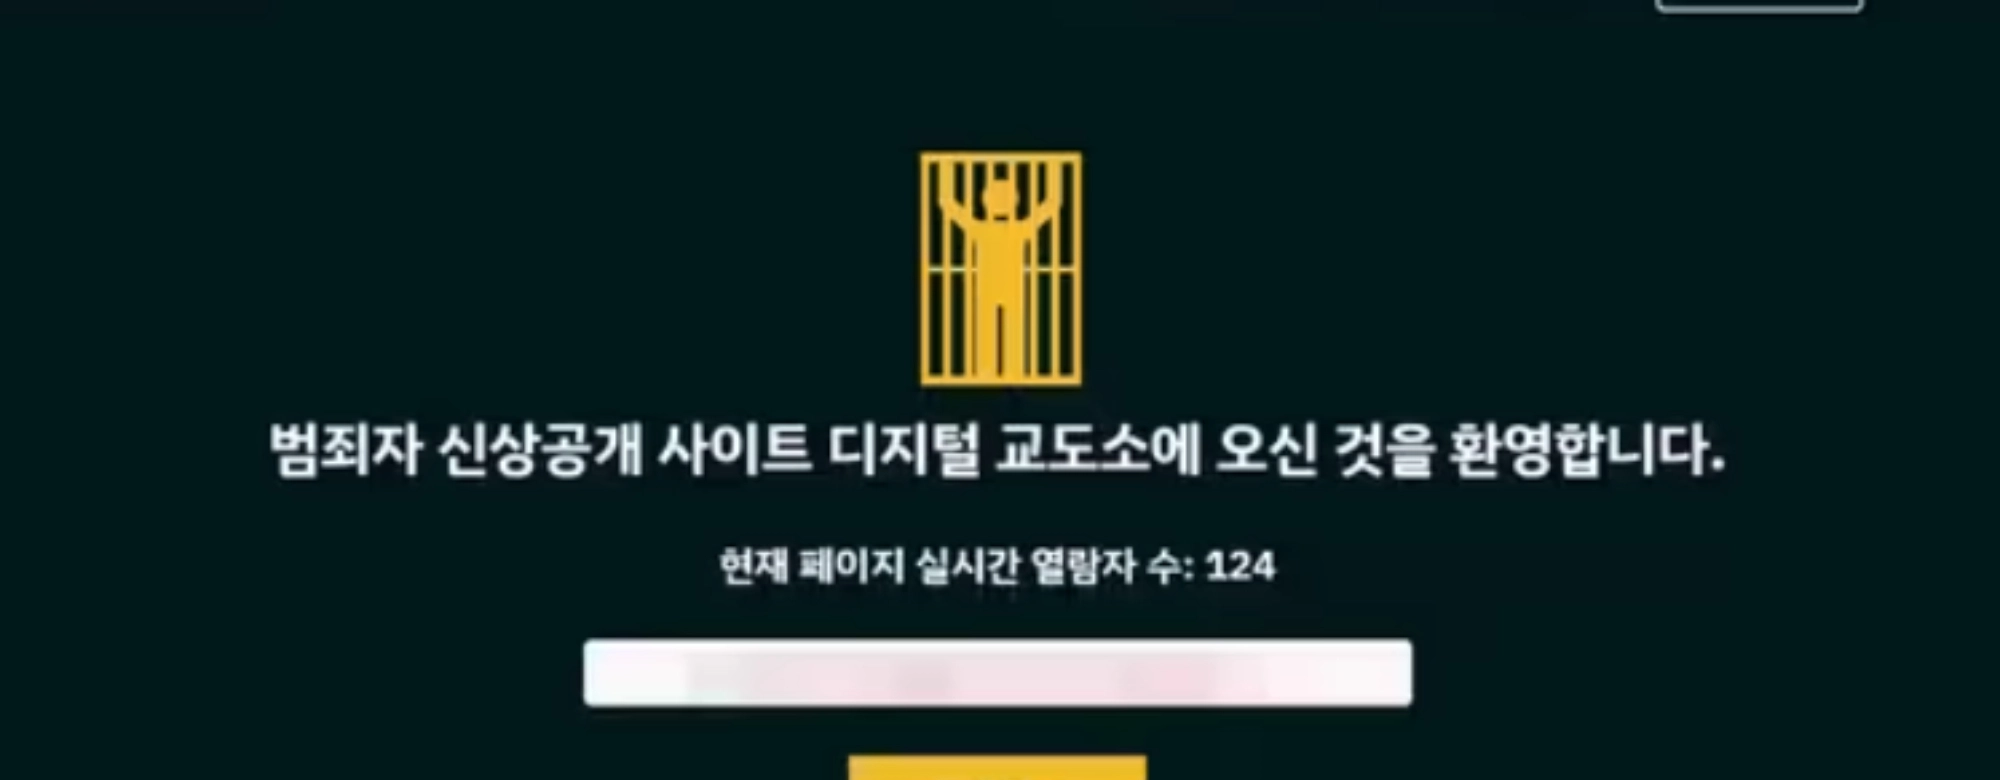 [뉴스숏]‘디지털 교도소‘ 신상털기 논란에 사적제재 갑론을박 